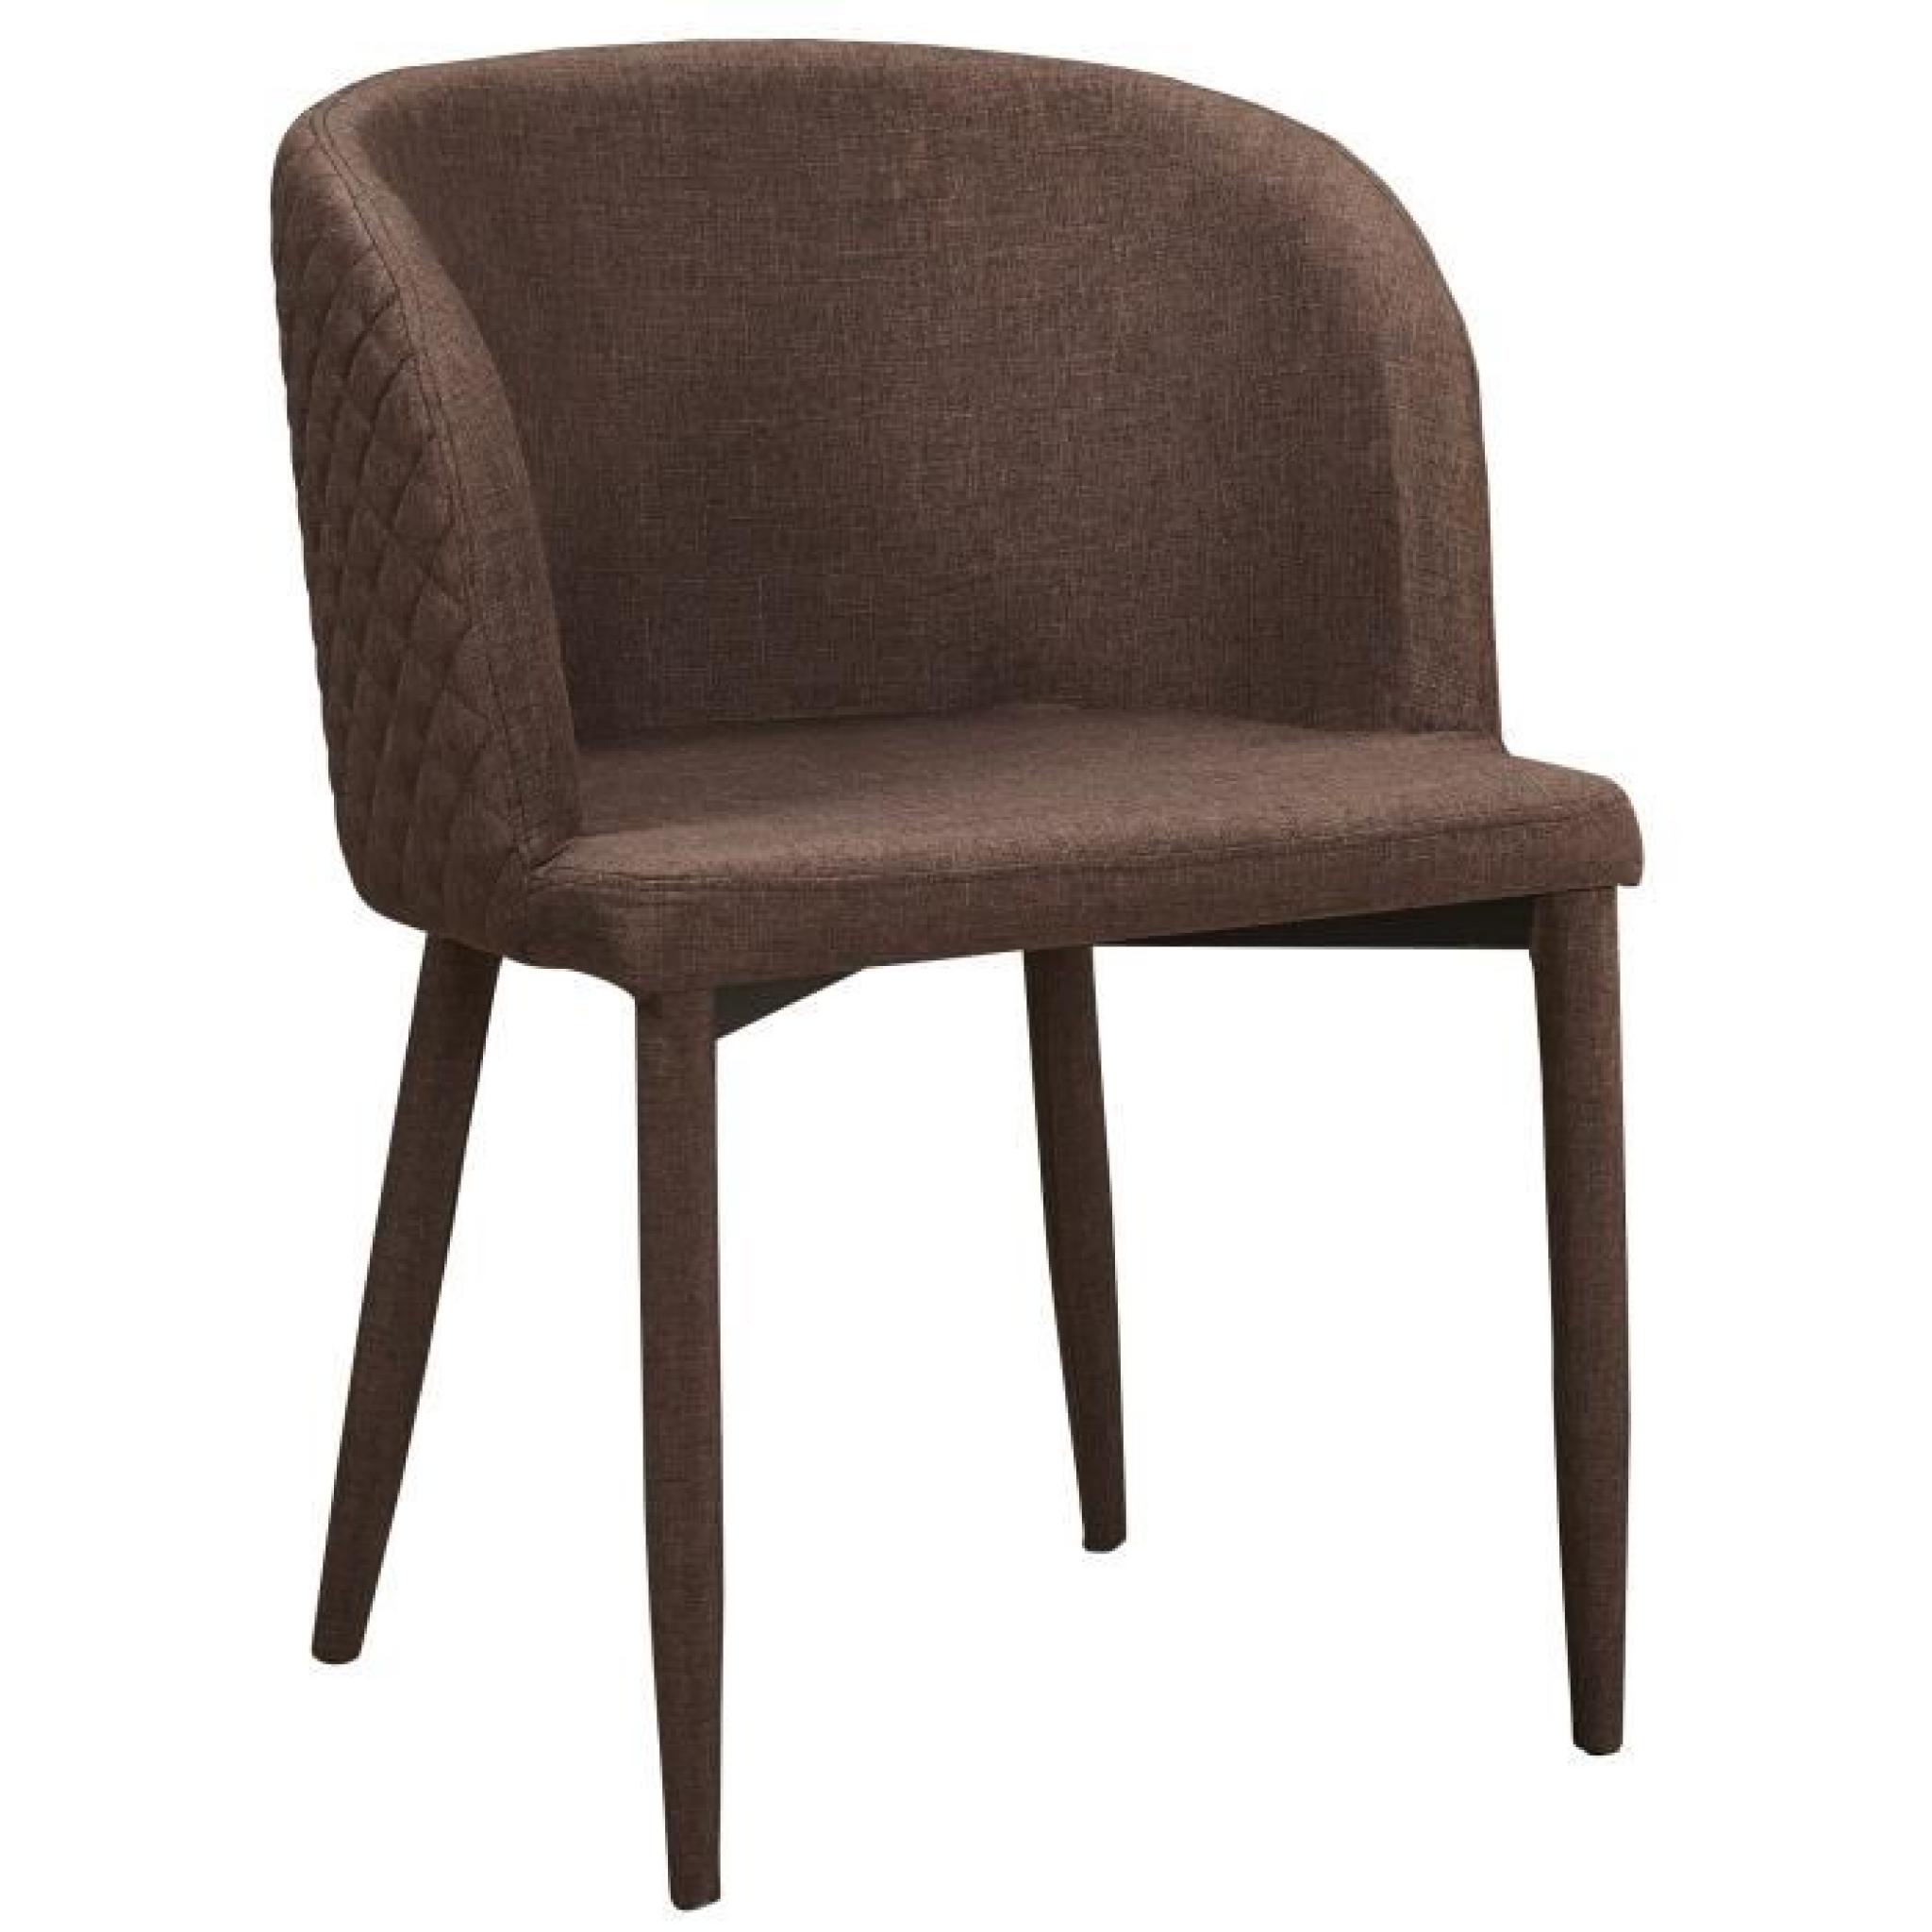 Chaise en tissus design quadrillé avec accoudoirs coloris beige